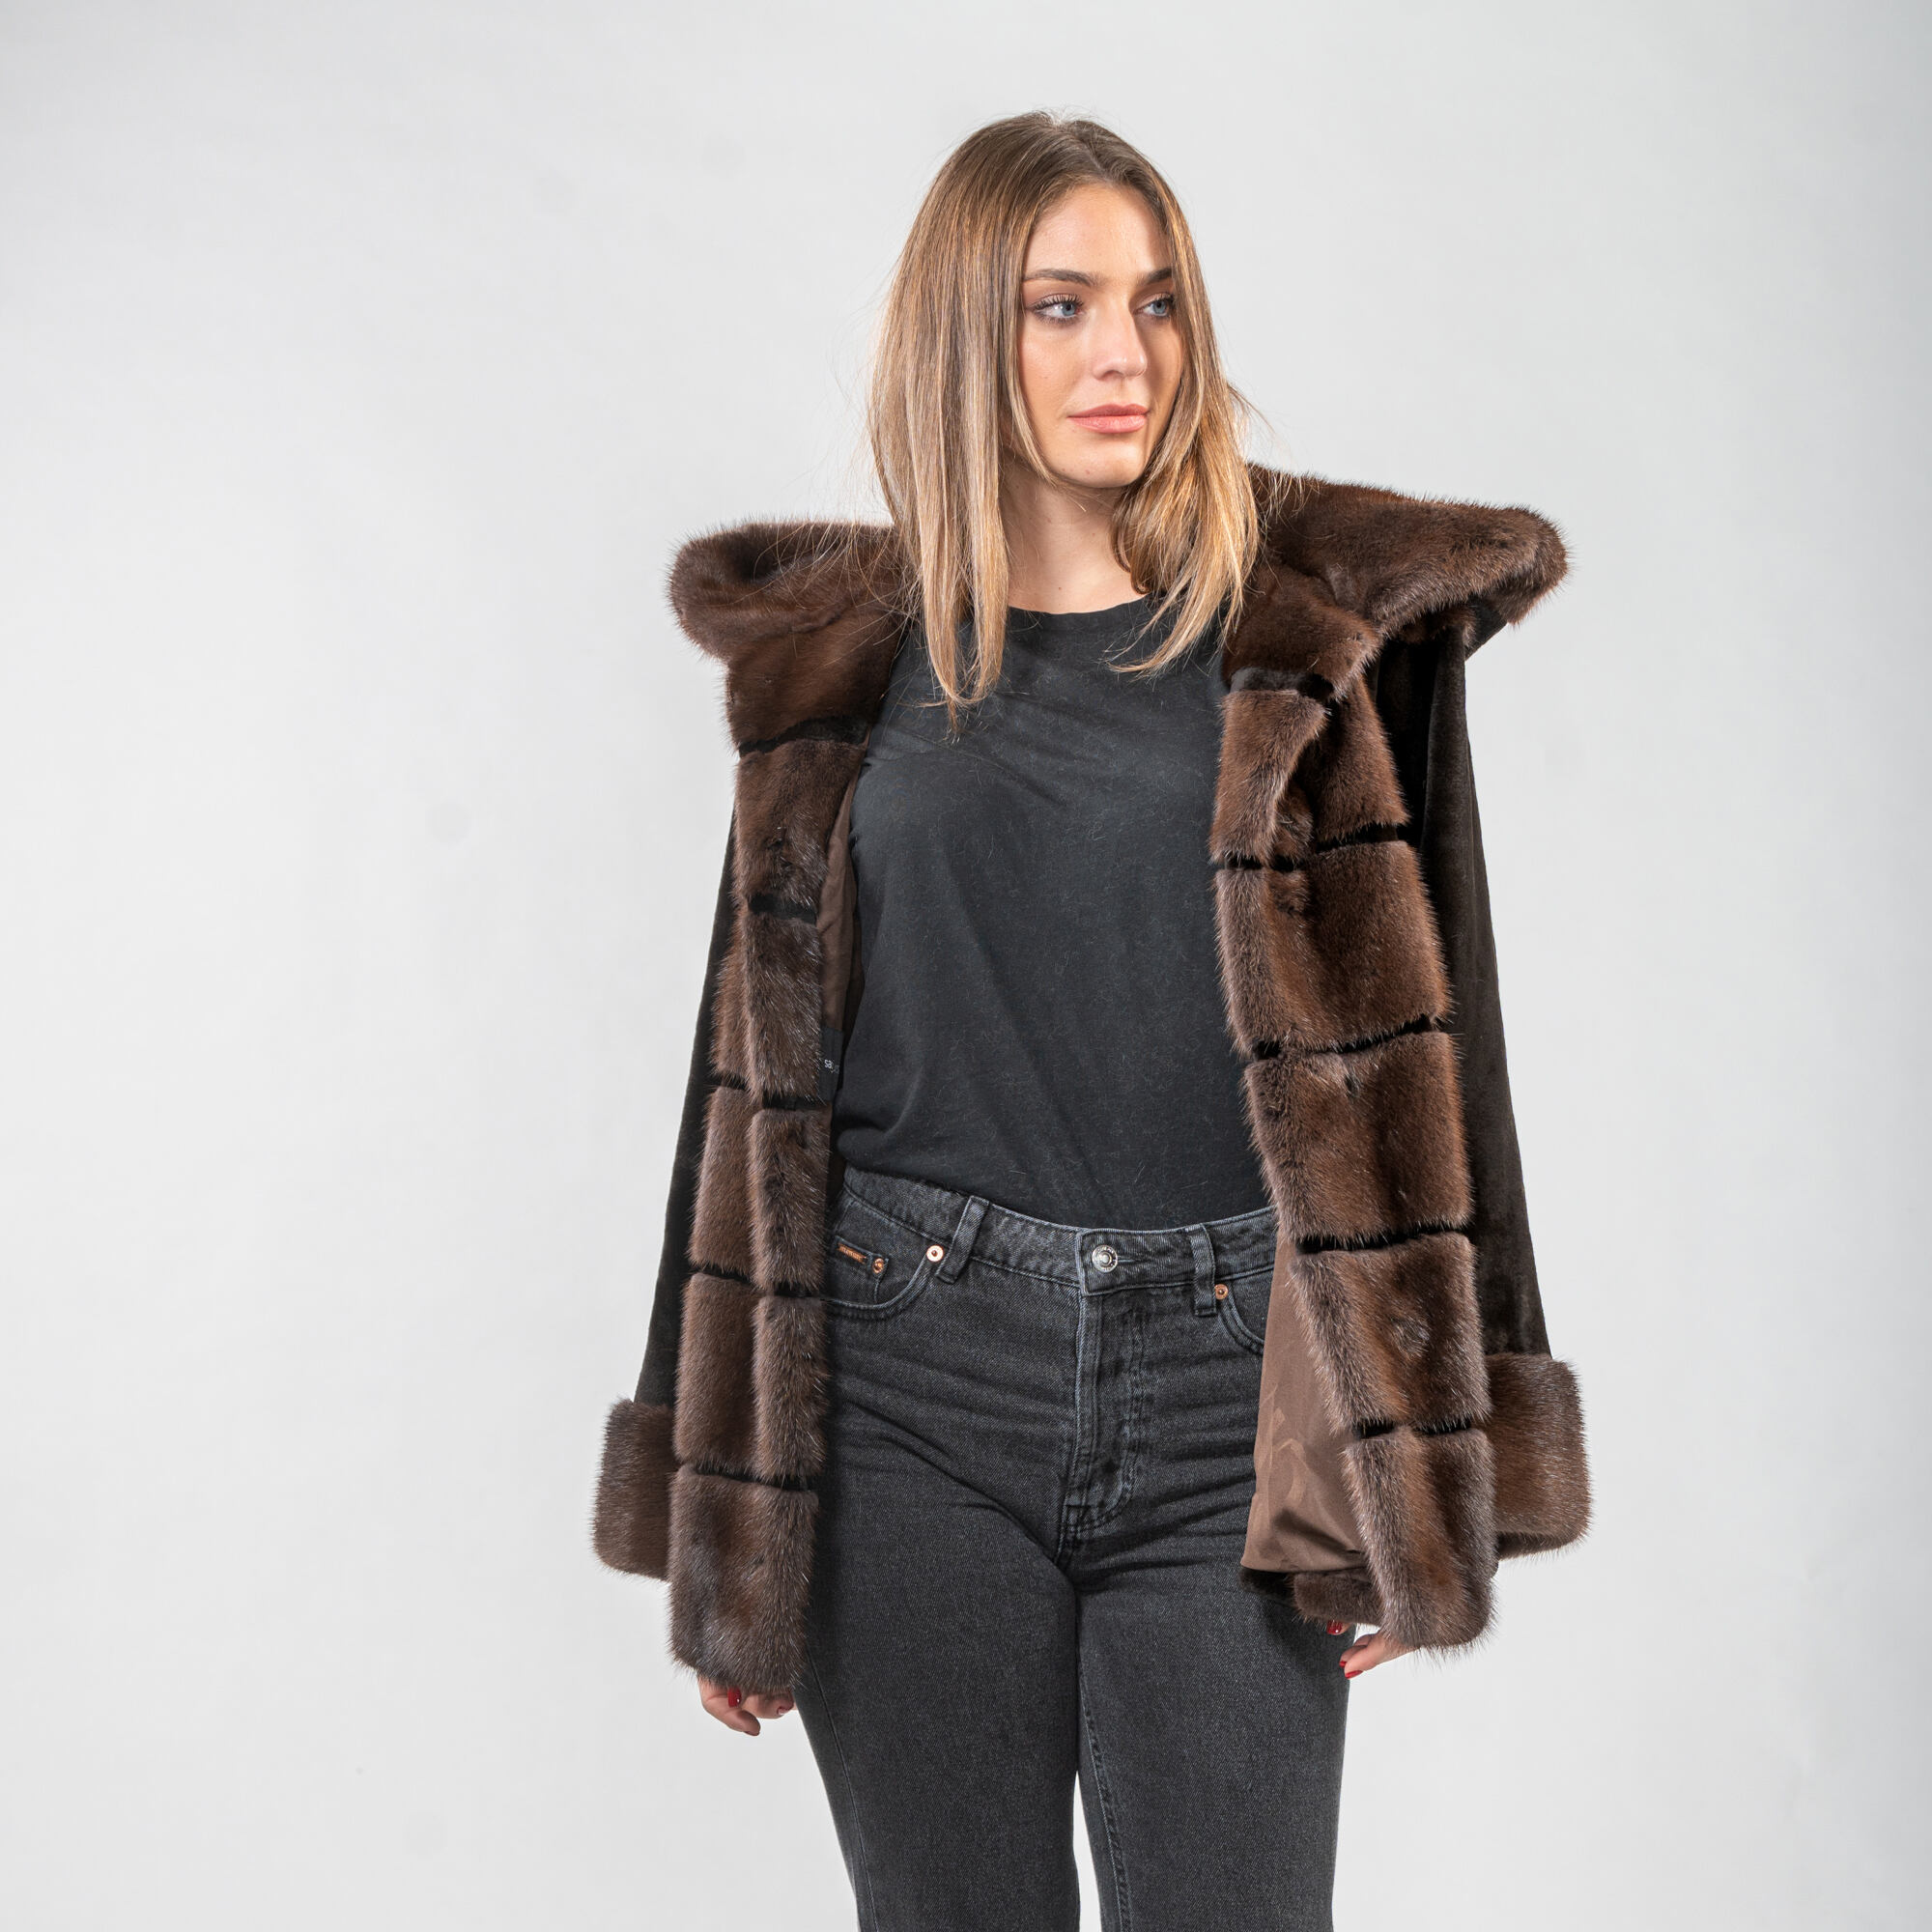 Mink fur hooded jacket in brown shades